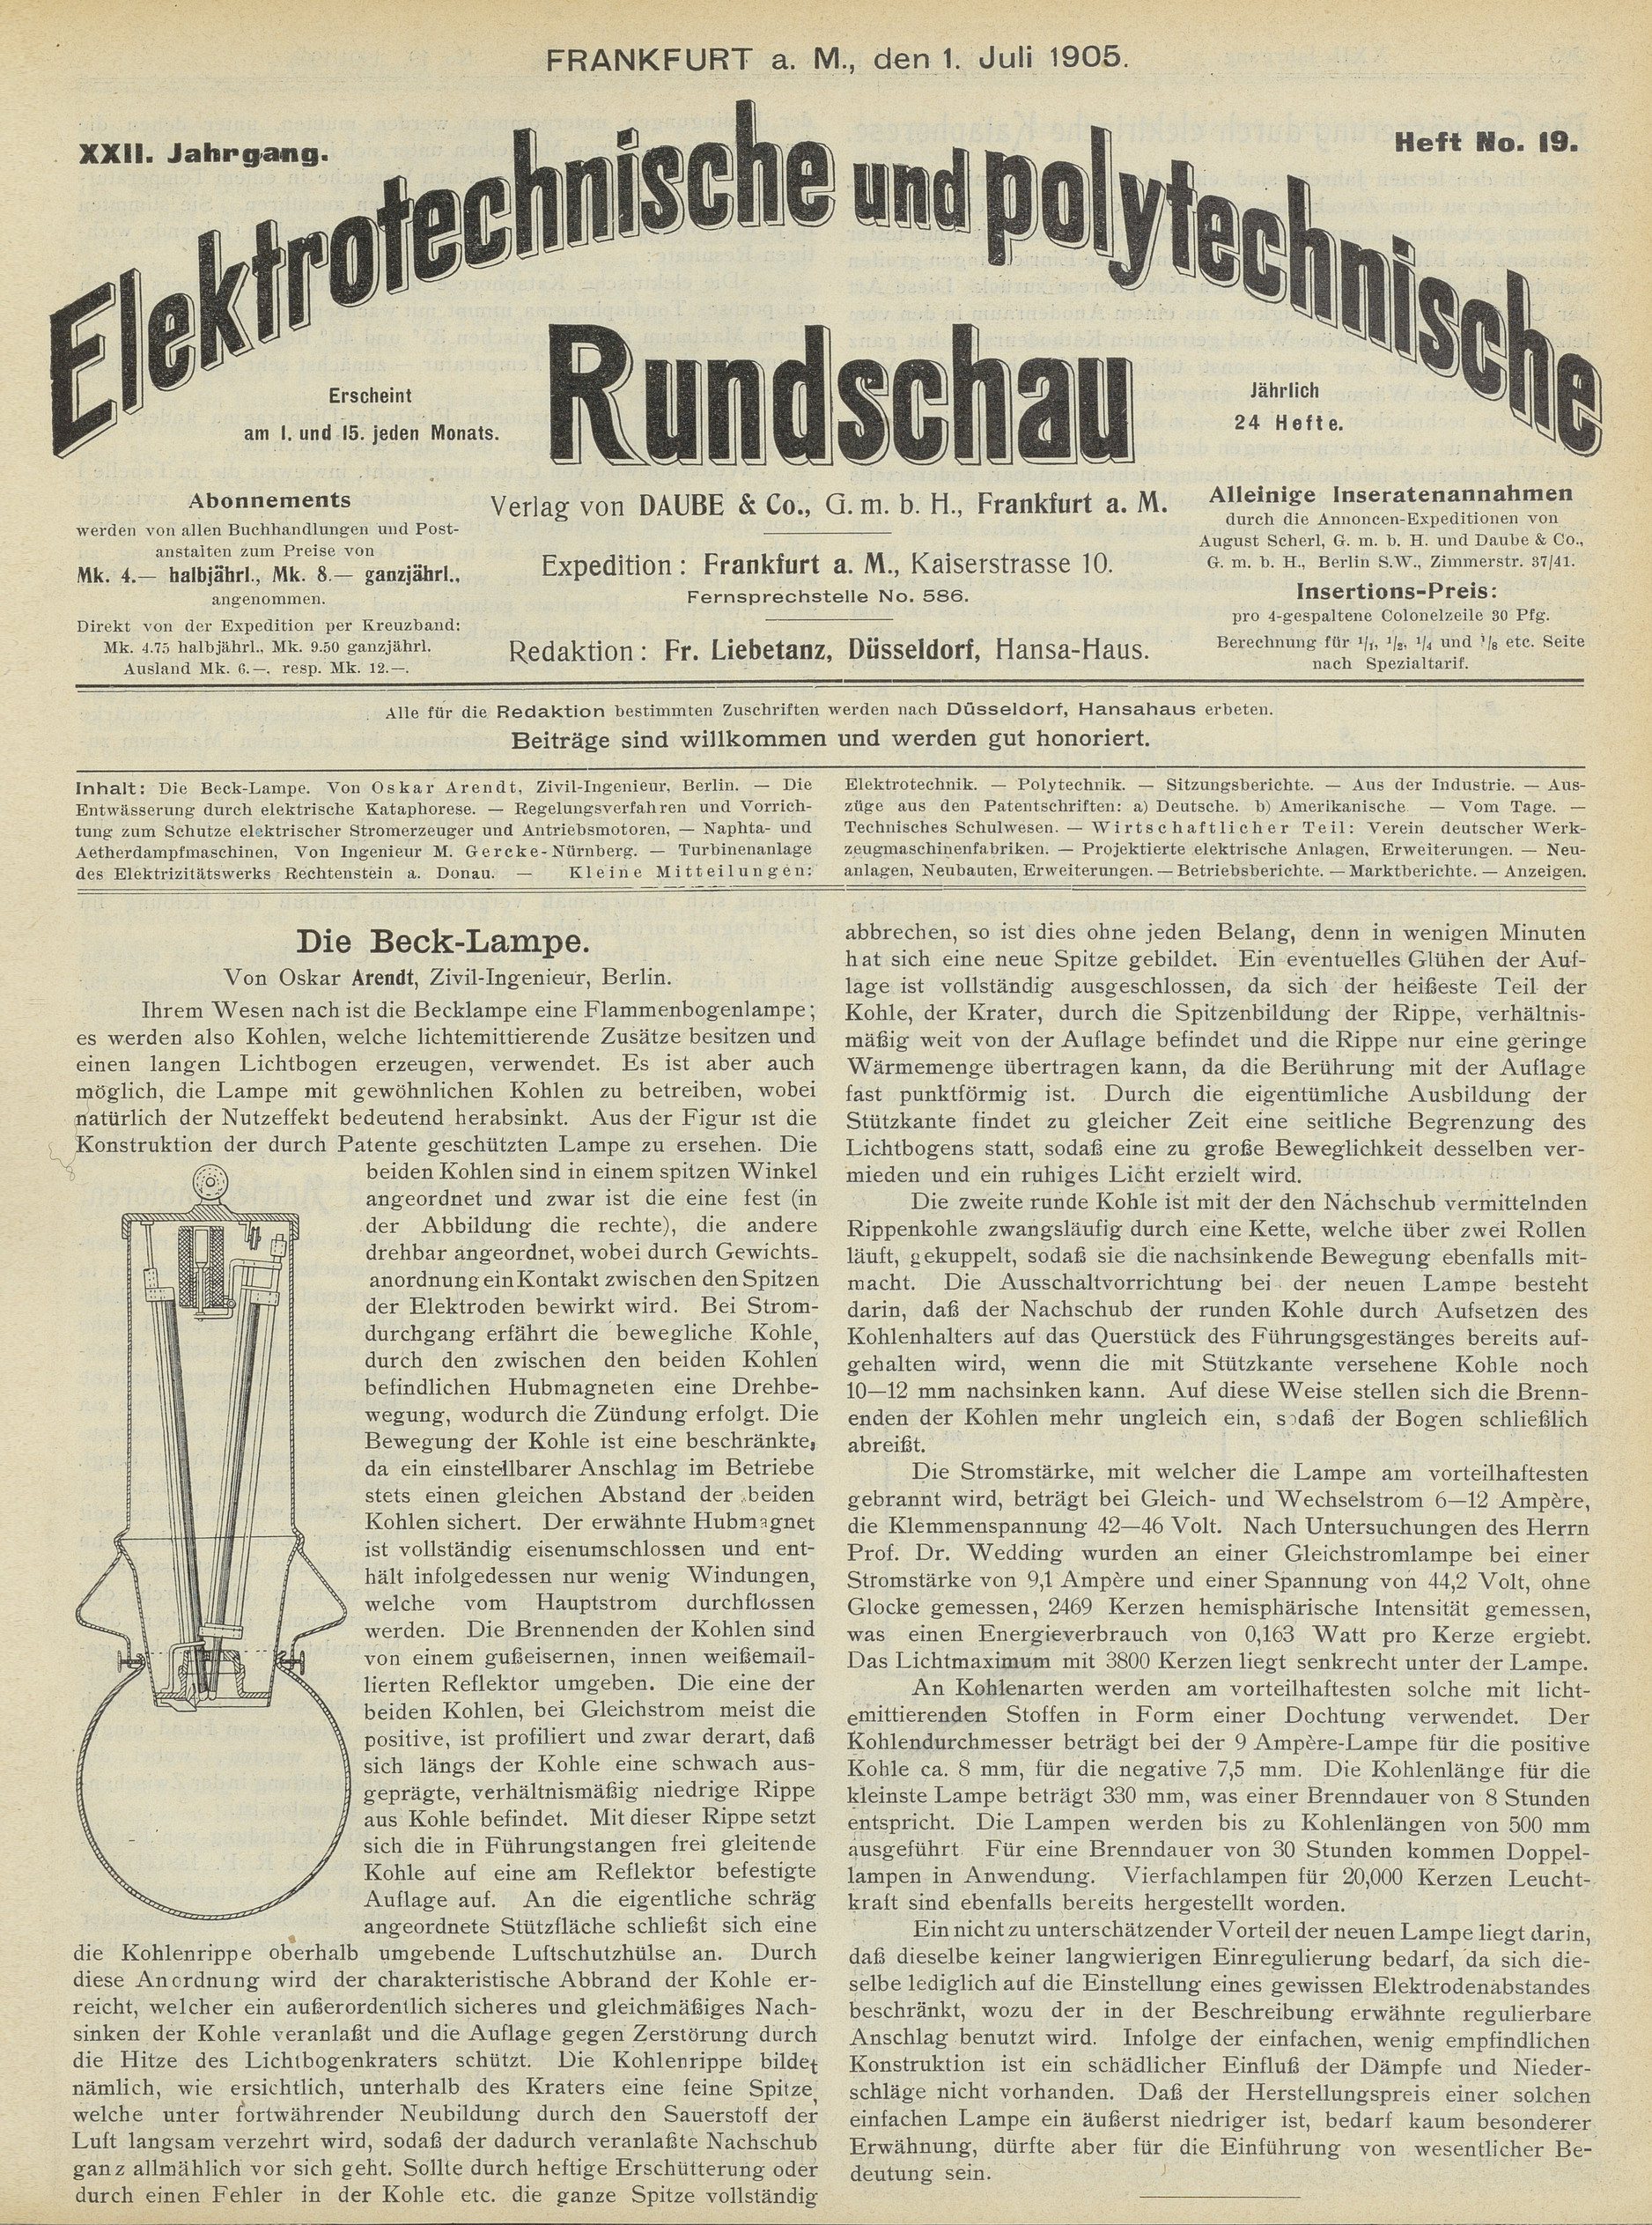 Elektrotechnische und polytechnische Rundschau, XXII. Jahrgang, Heft No. 19